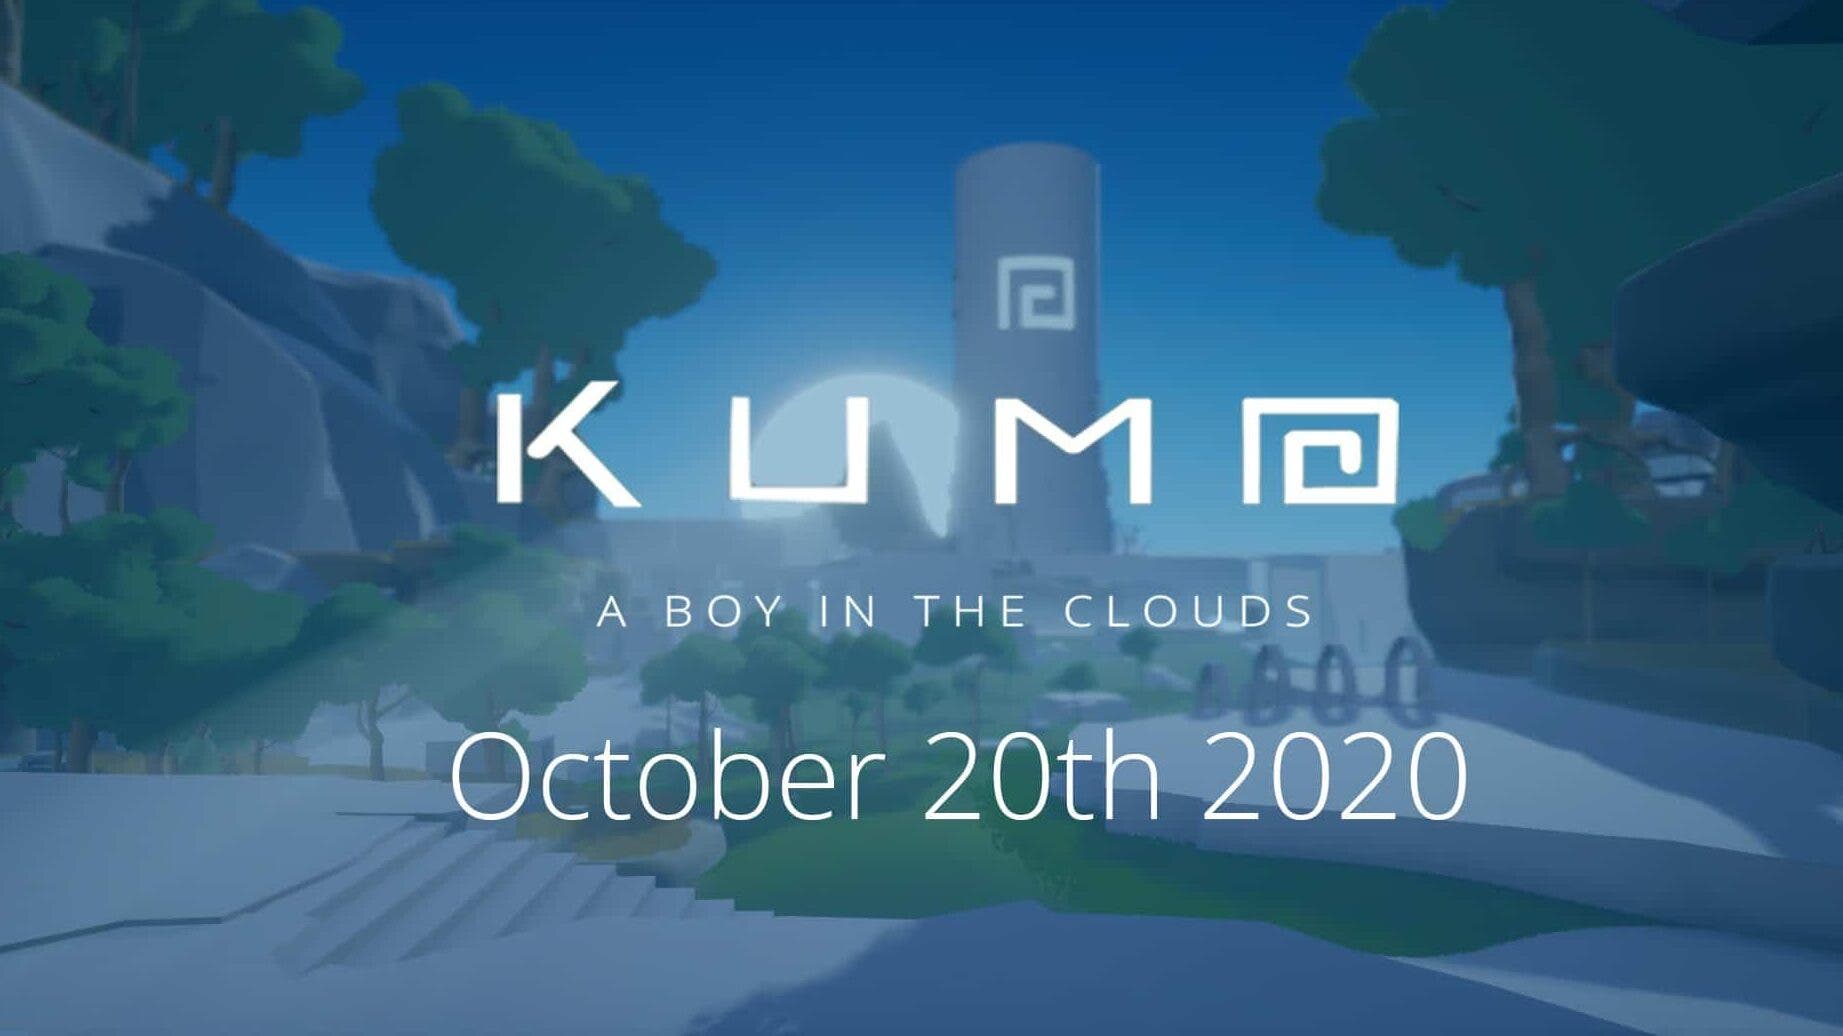 Kumo se lanzará el 20 de octubre en Nintendo Switch